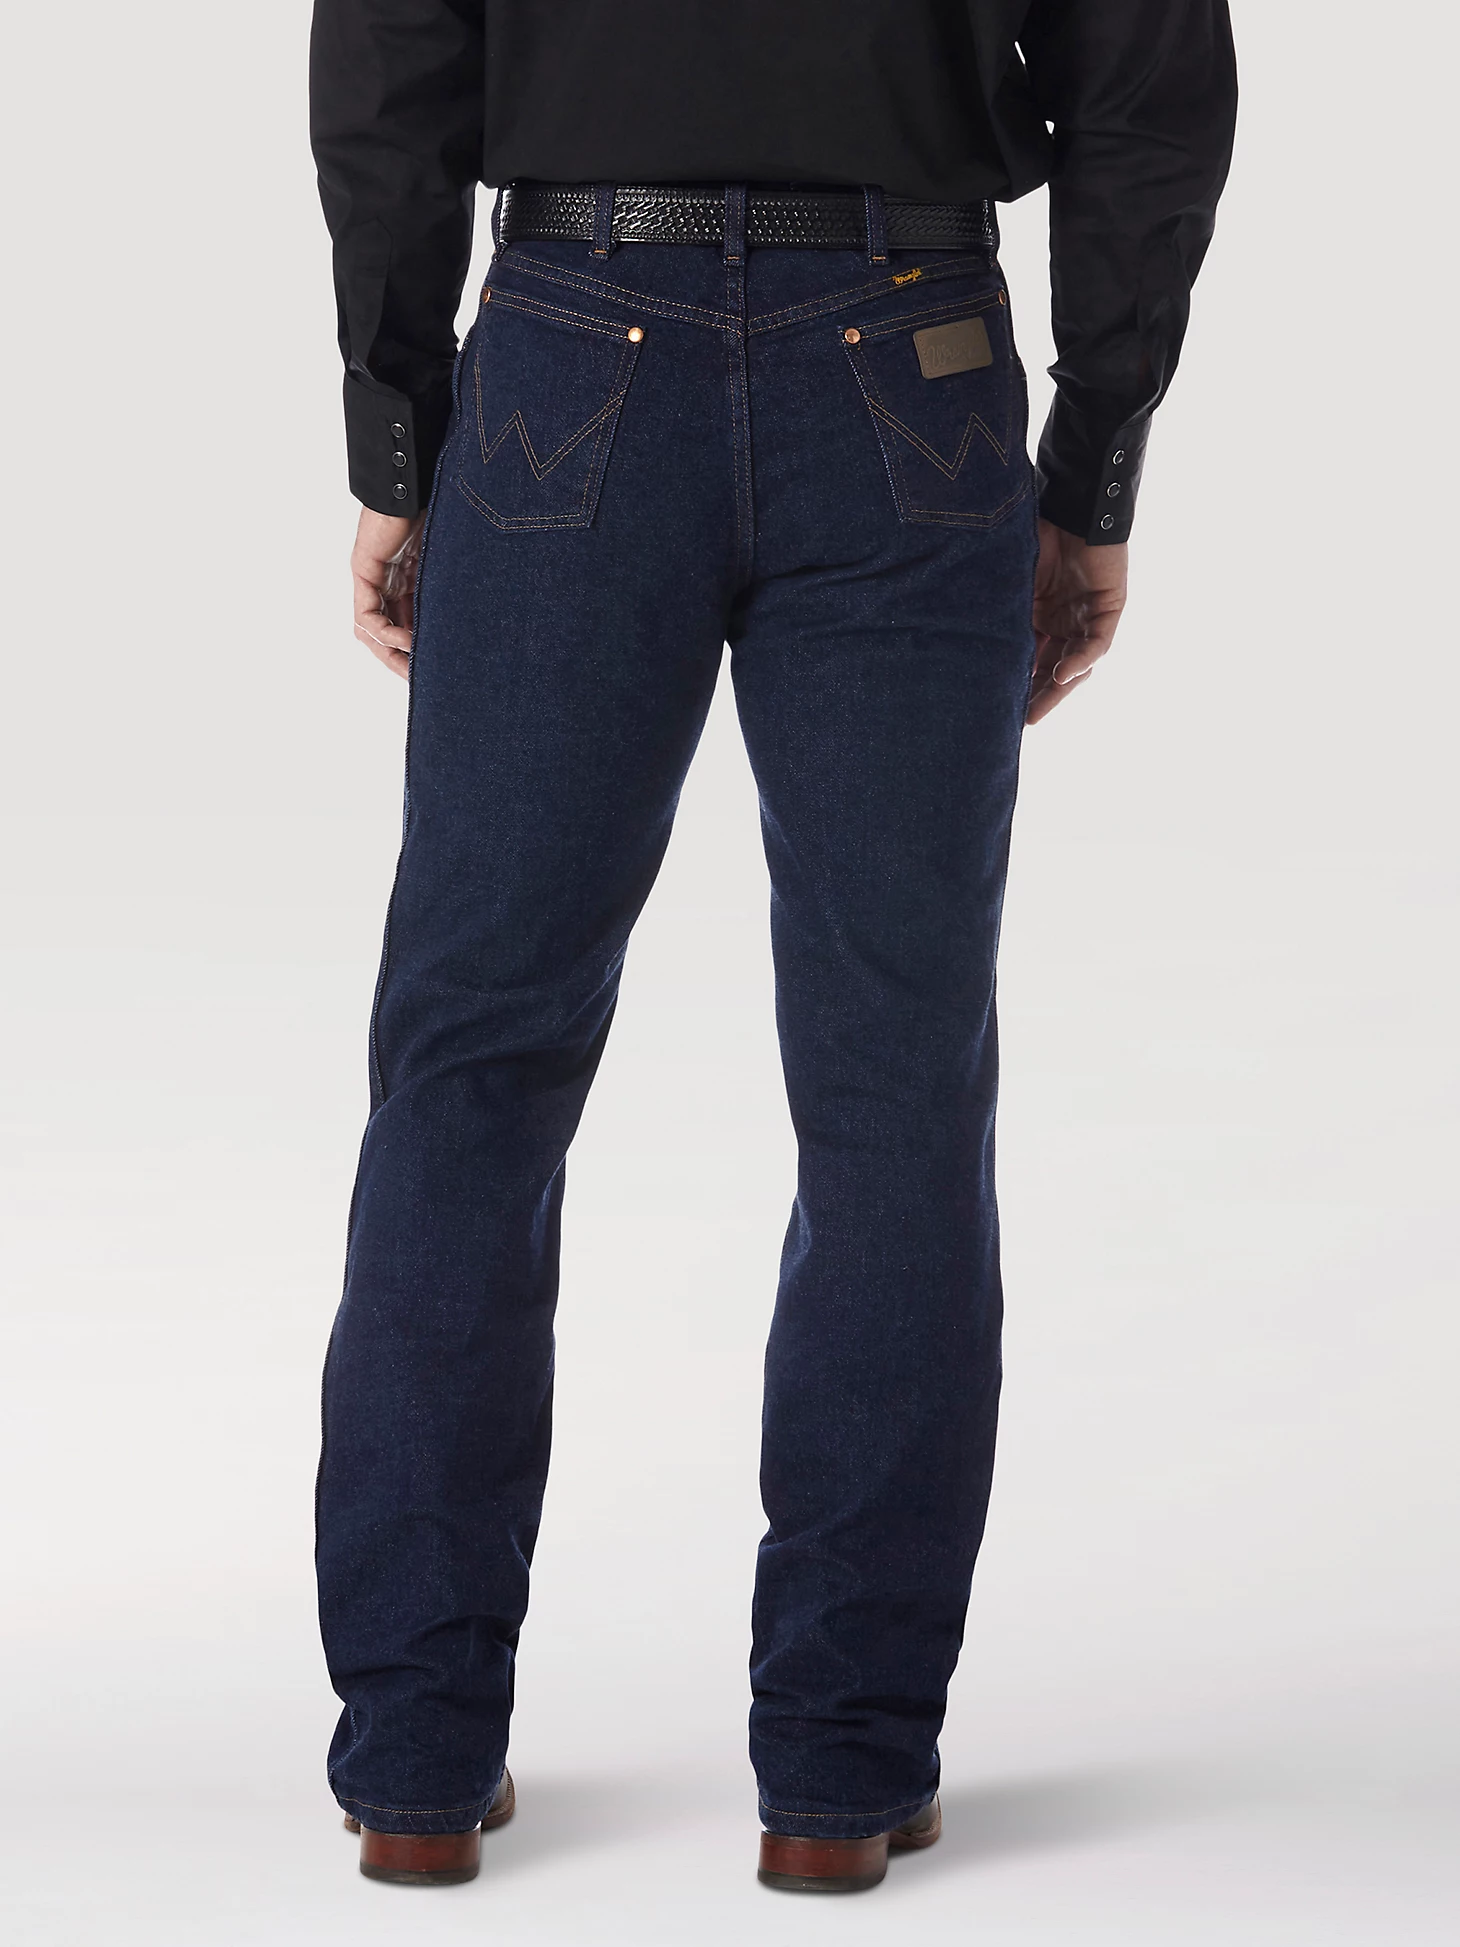 mens wrangler 947dtr stretch jeans canada